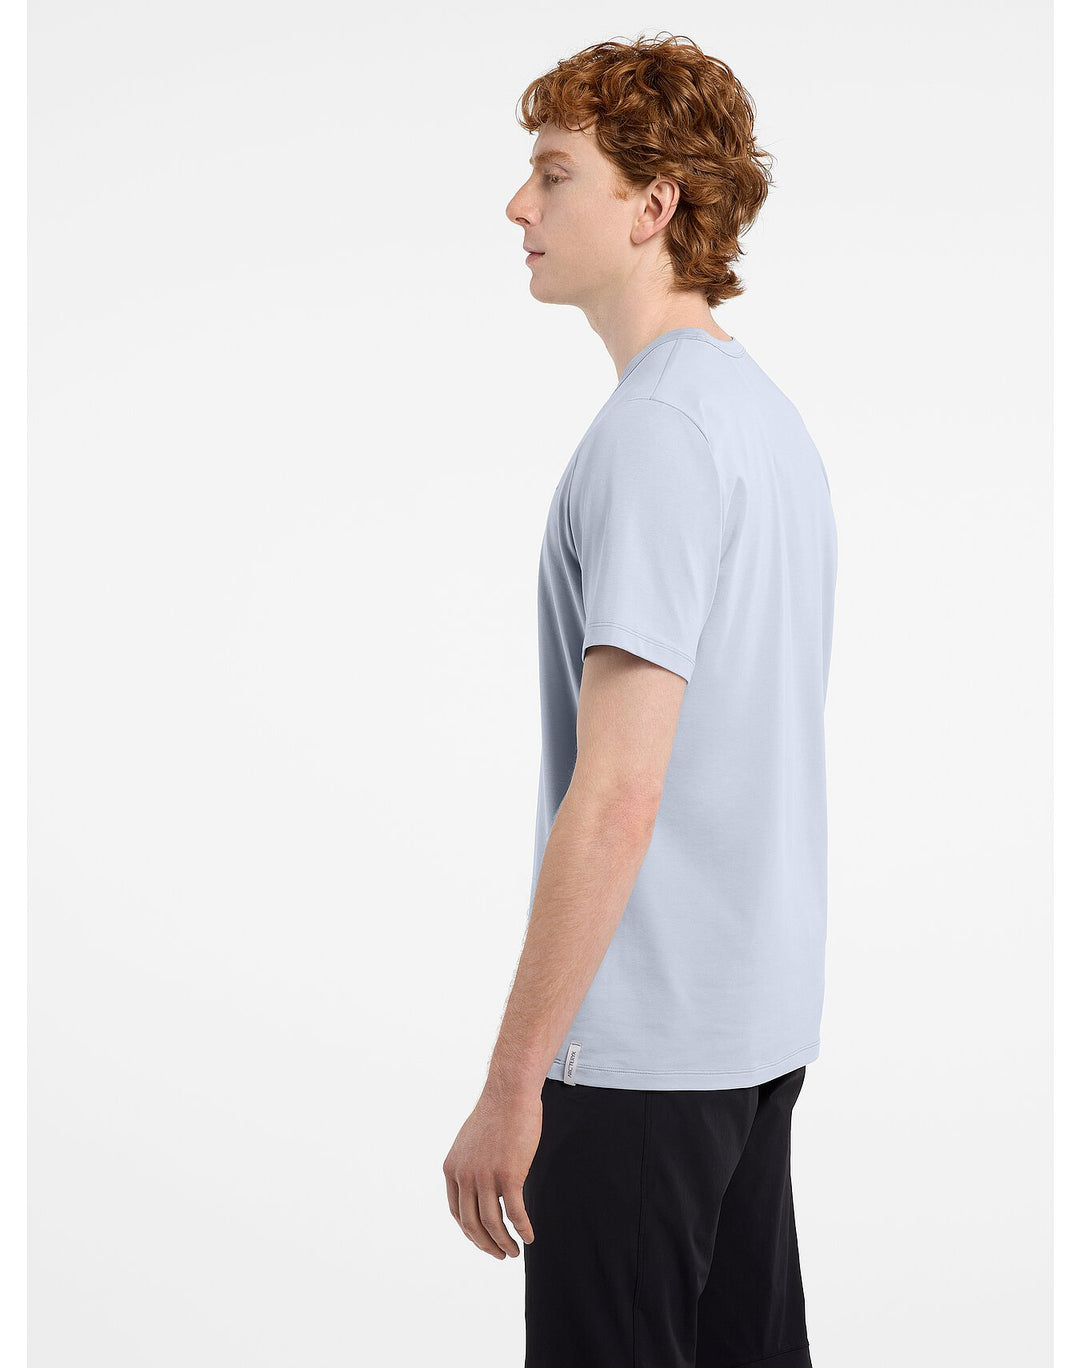 T-shirt Arc'teryx Captive Split à manches courtes pour hommes